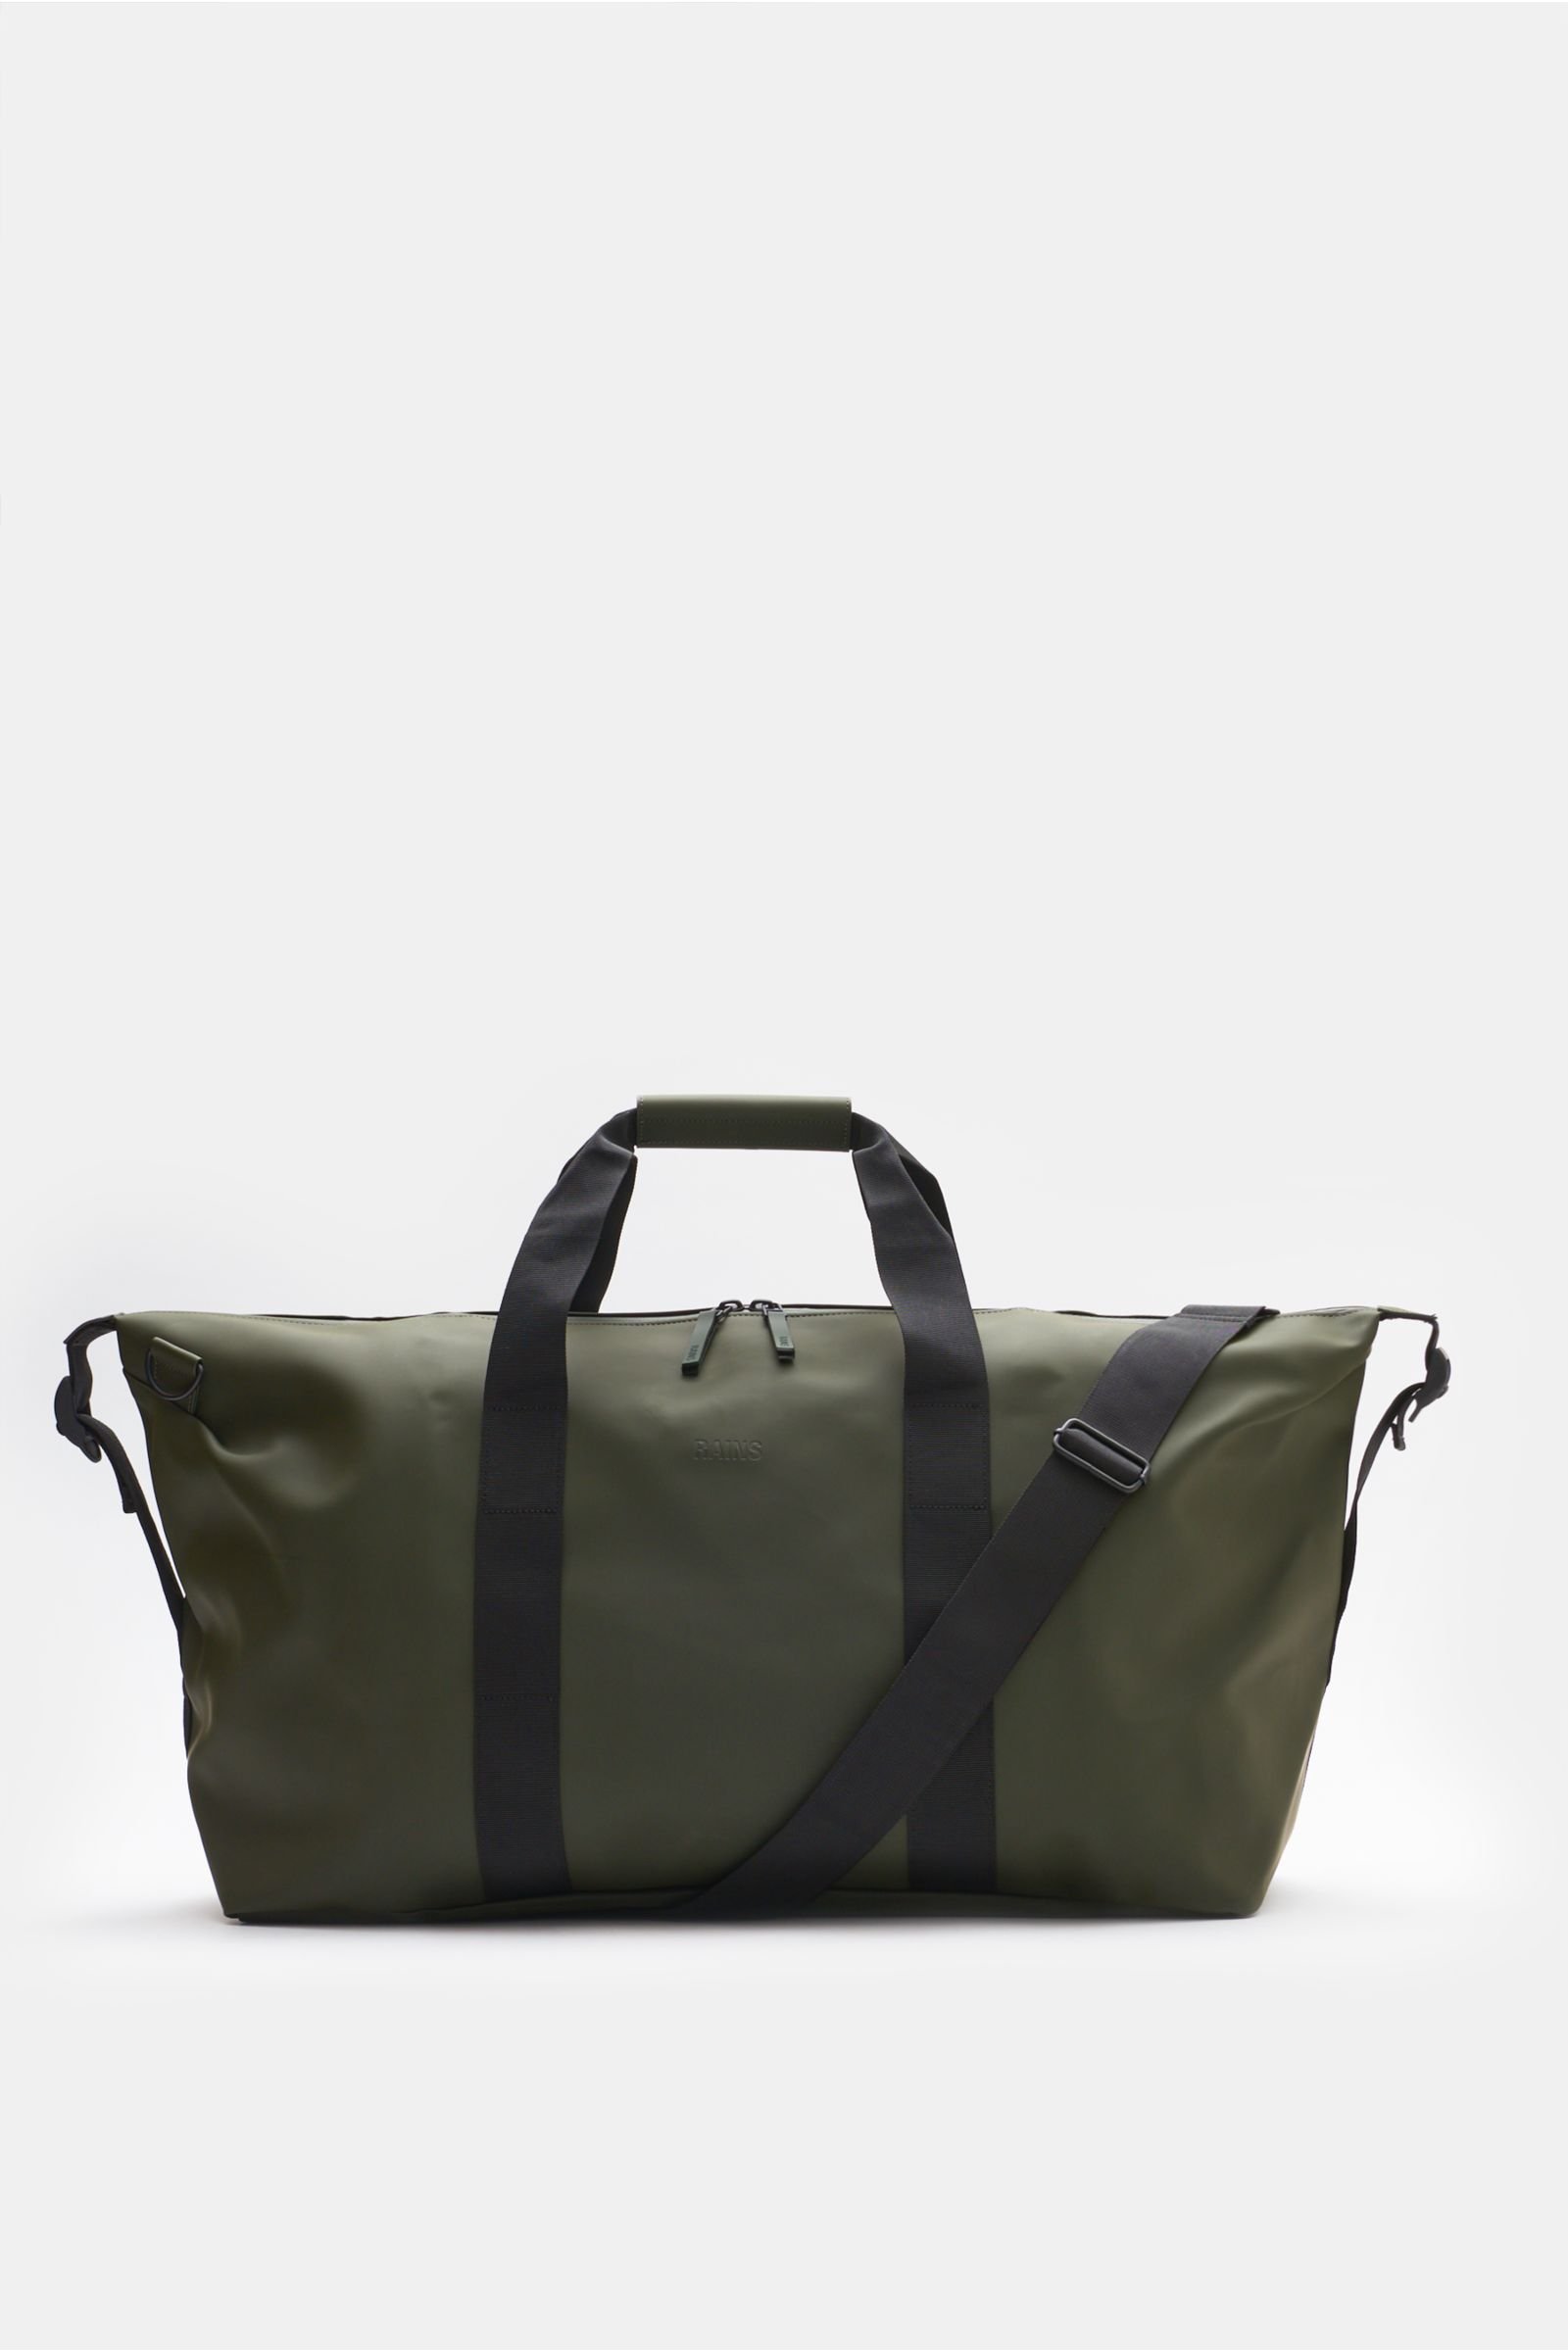 Travel bag 'Weekend Bag Large' olive